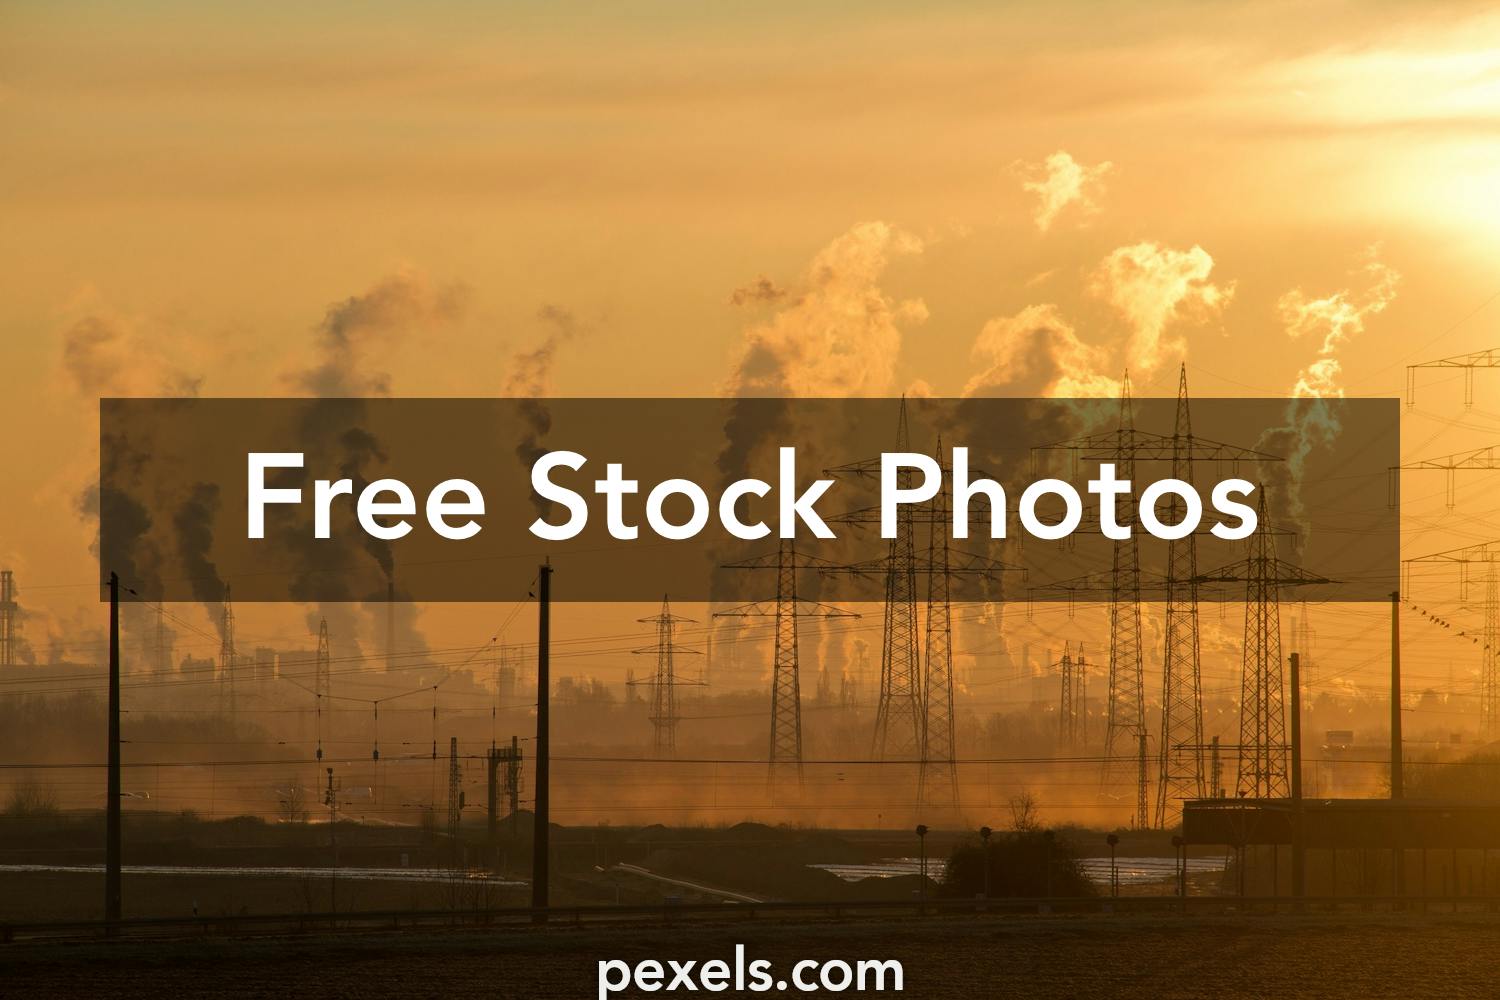 1000 Beautiful Electricity Poles Photos Pexels Free Stock Photos Images, Photos, Reviews